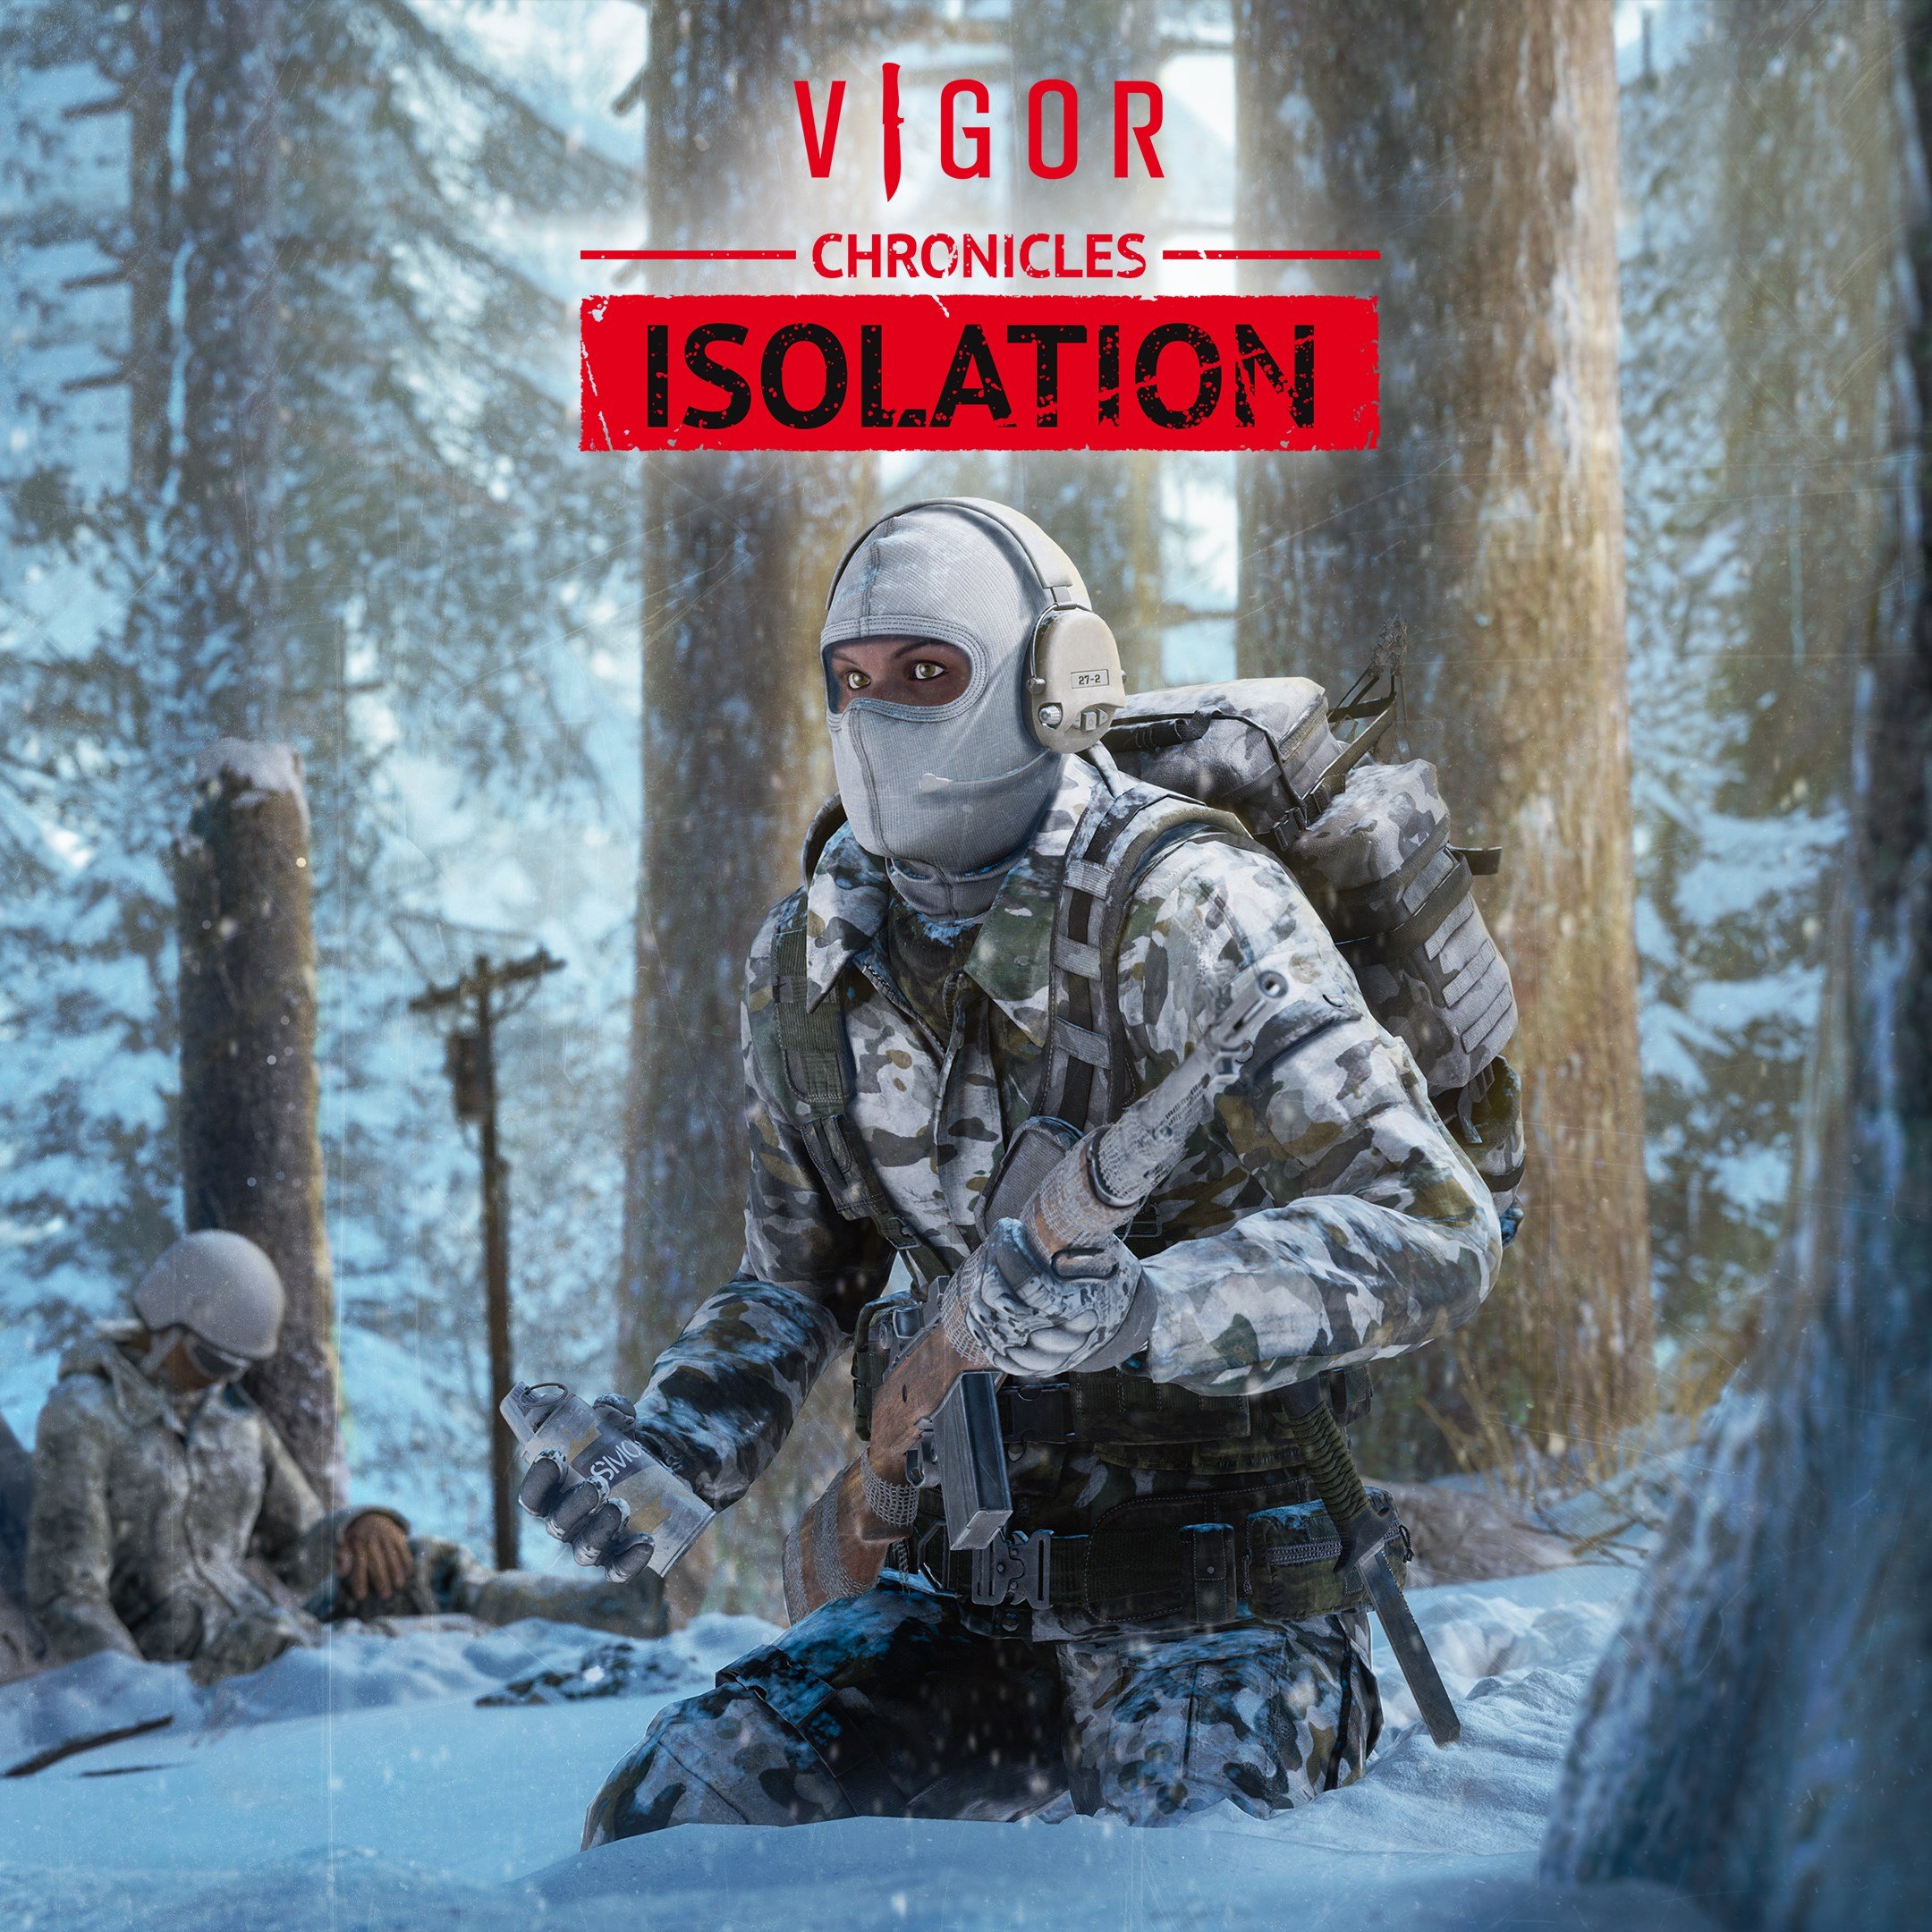 Vigor (Game Preview)